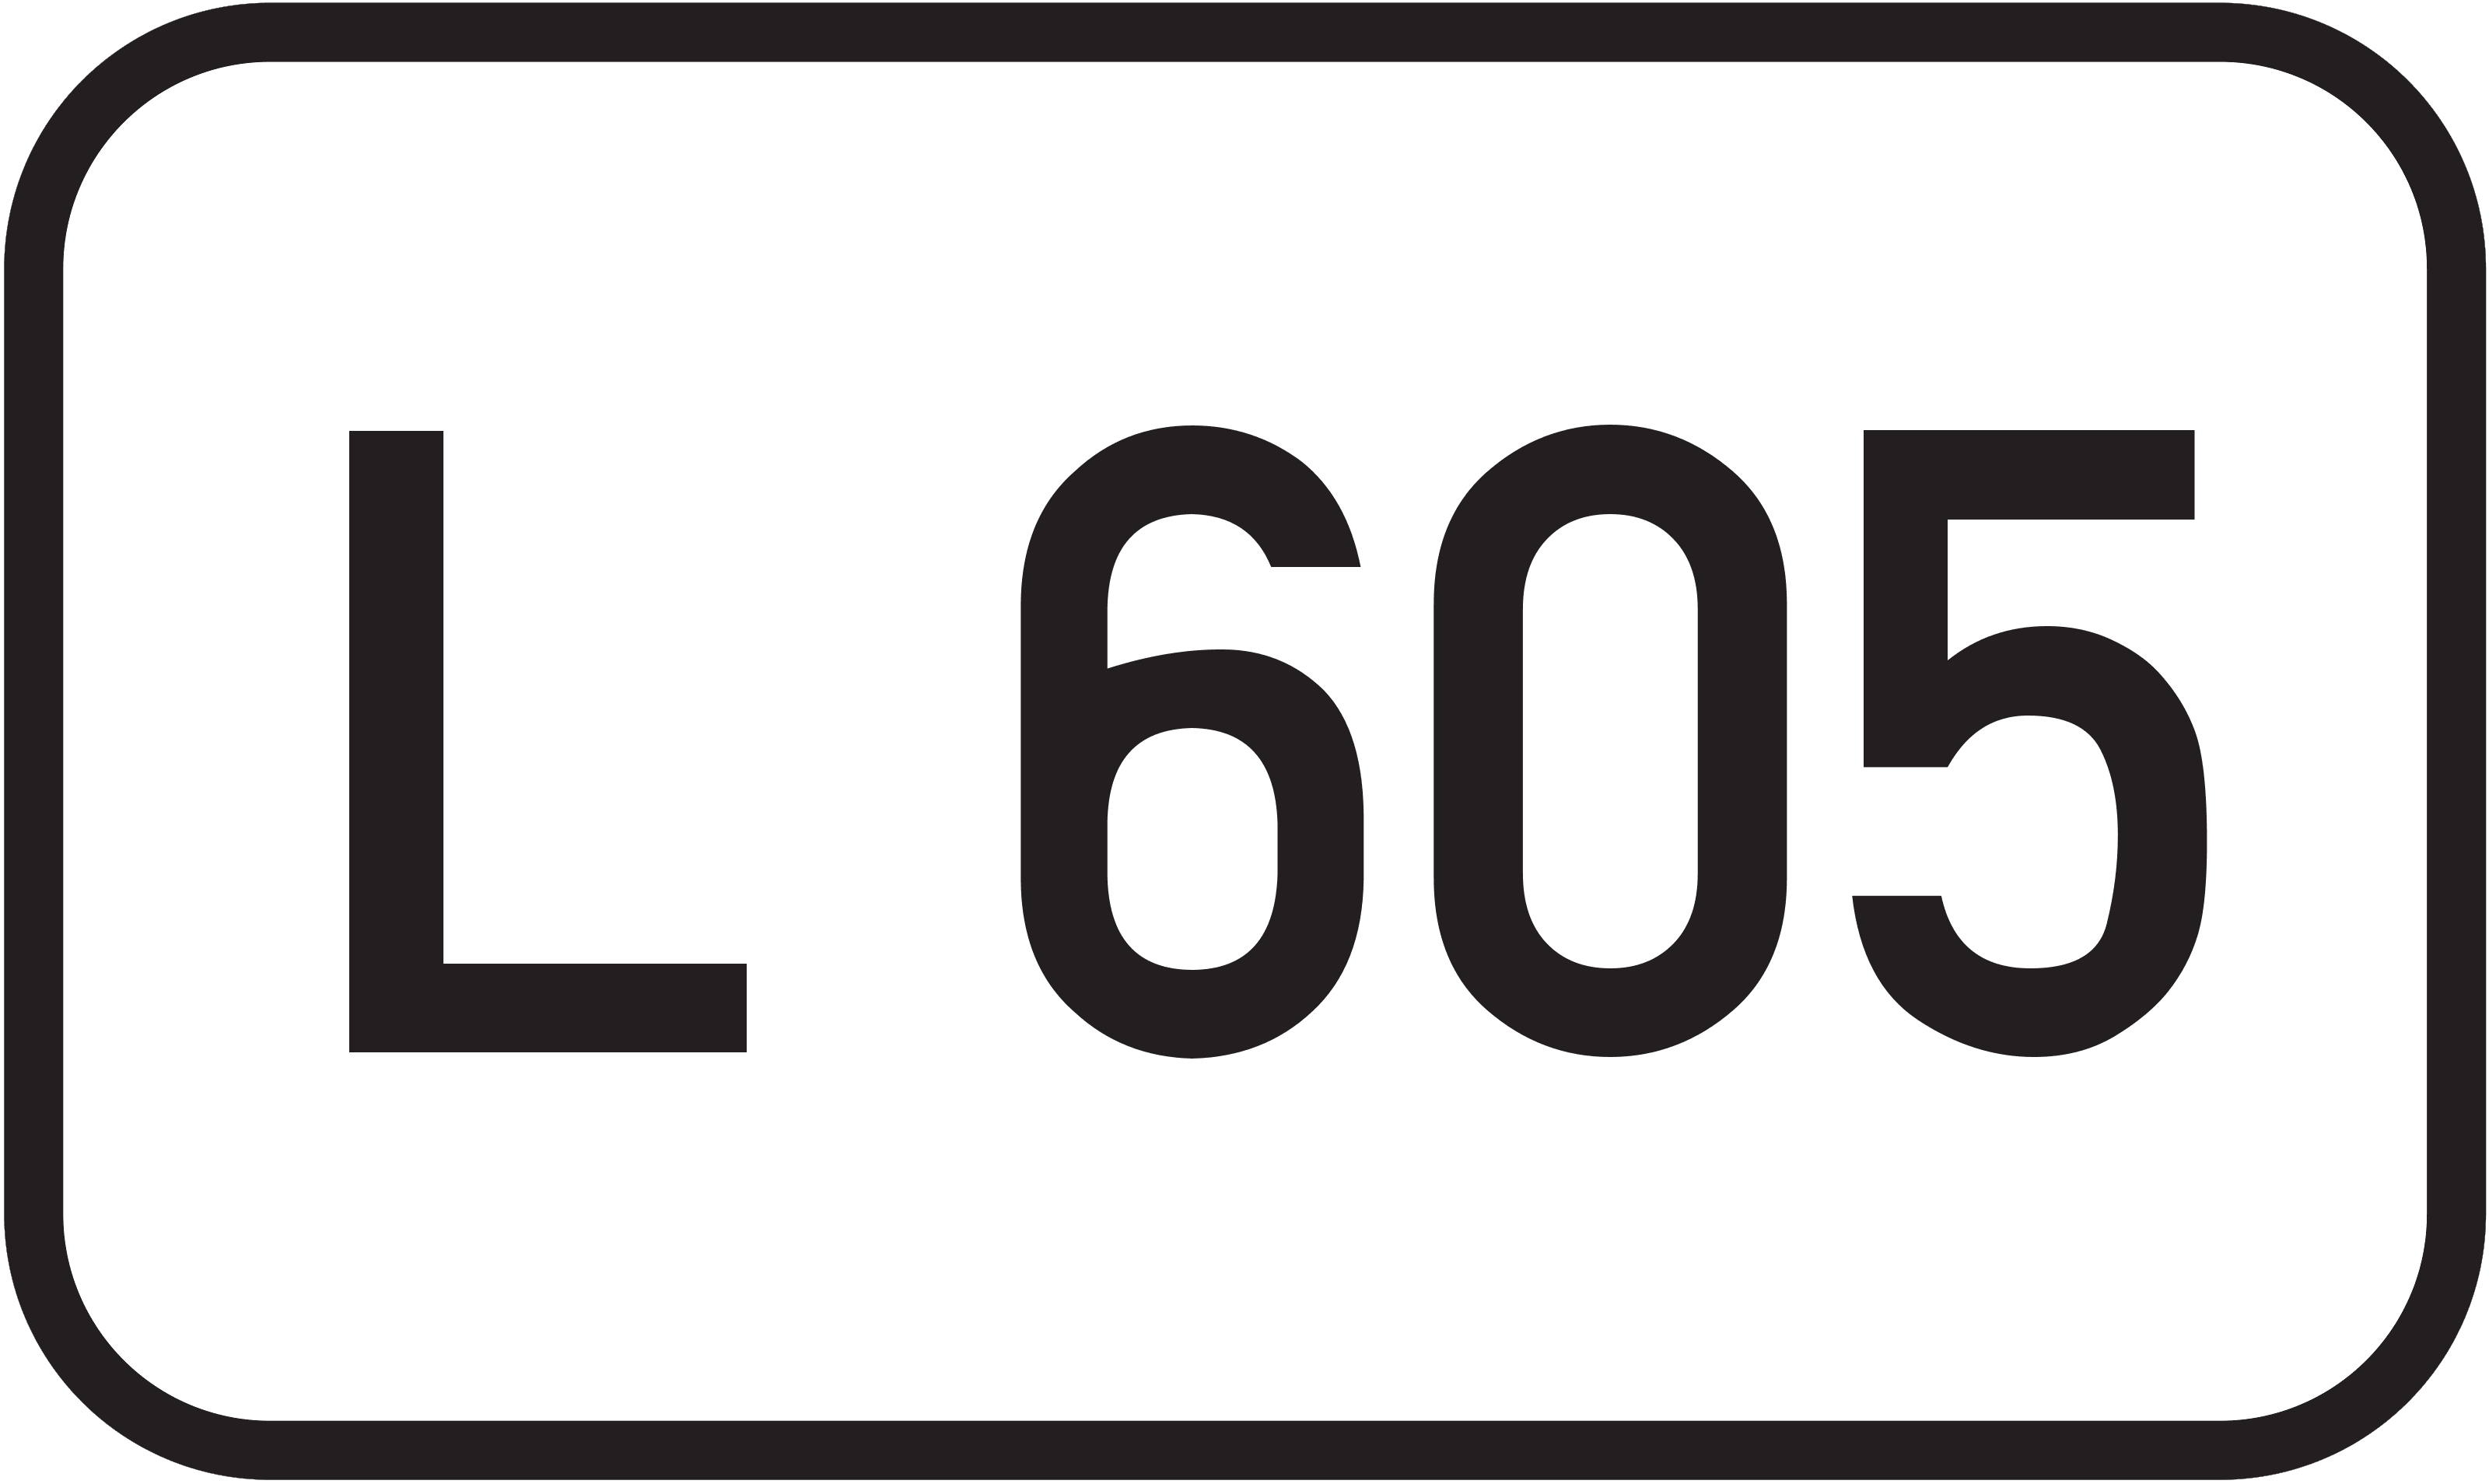 Landesstraße L 605